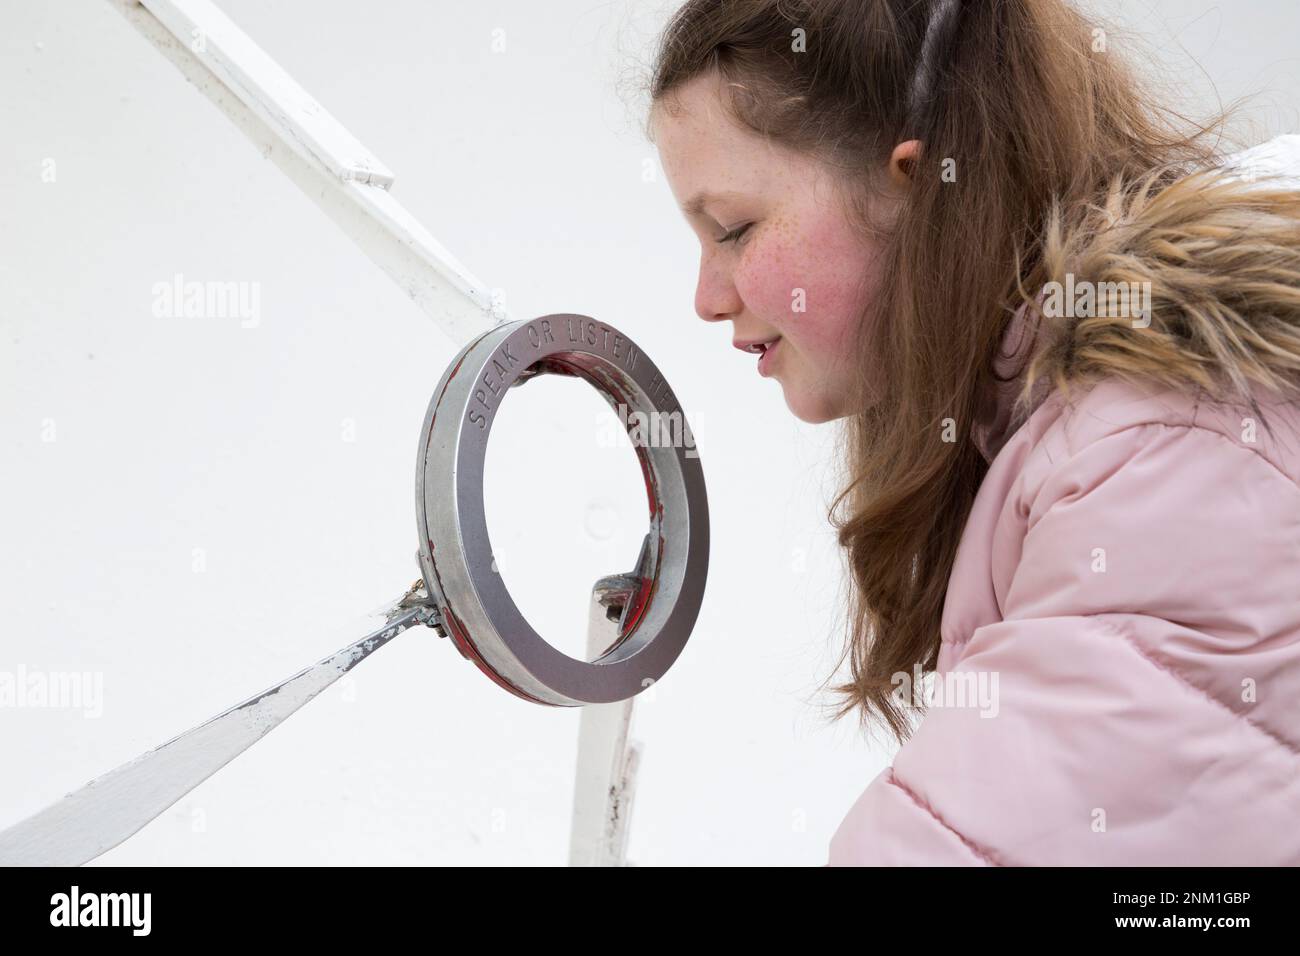 Kinder/Mädchen/Kinder/Kinder hören und sprechen auf der Flüsterschüssel/dem Geschirr, das als akustischer Spiegel dient, um Schallwellen zu übertragen und zu fokussieren. (133) Stockfoto